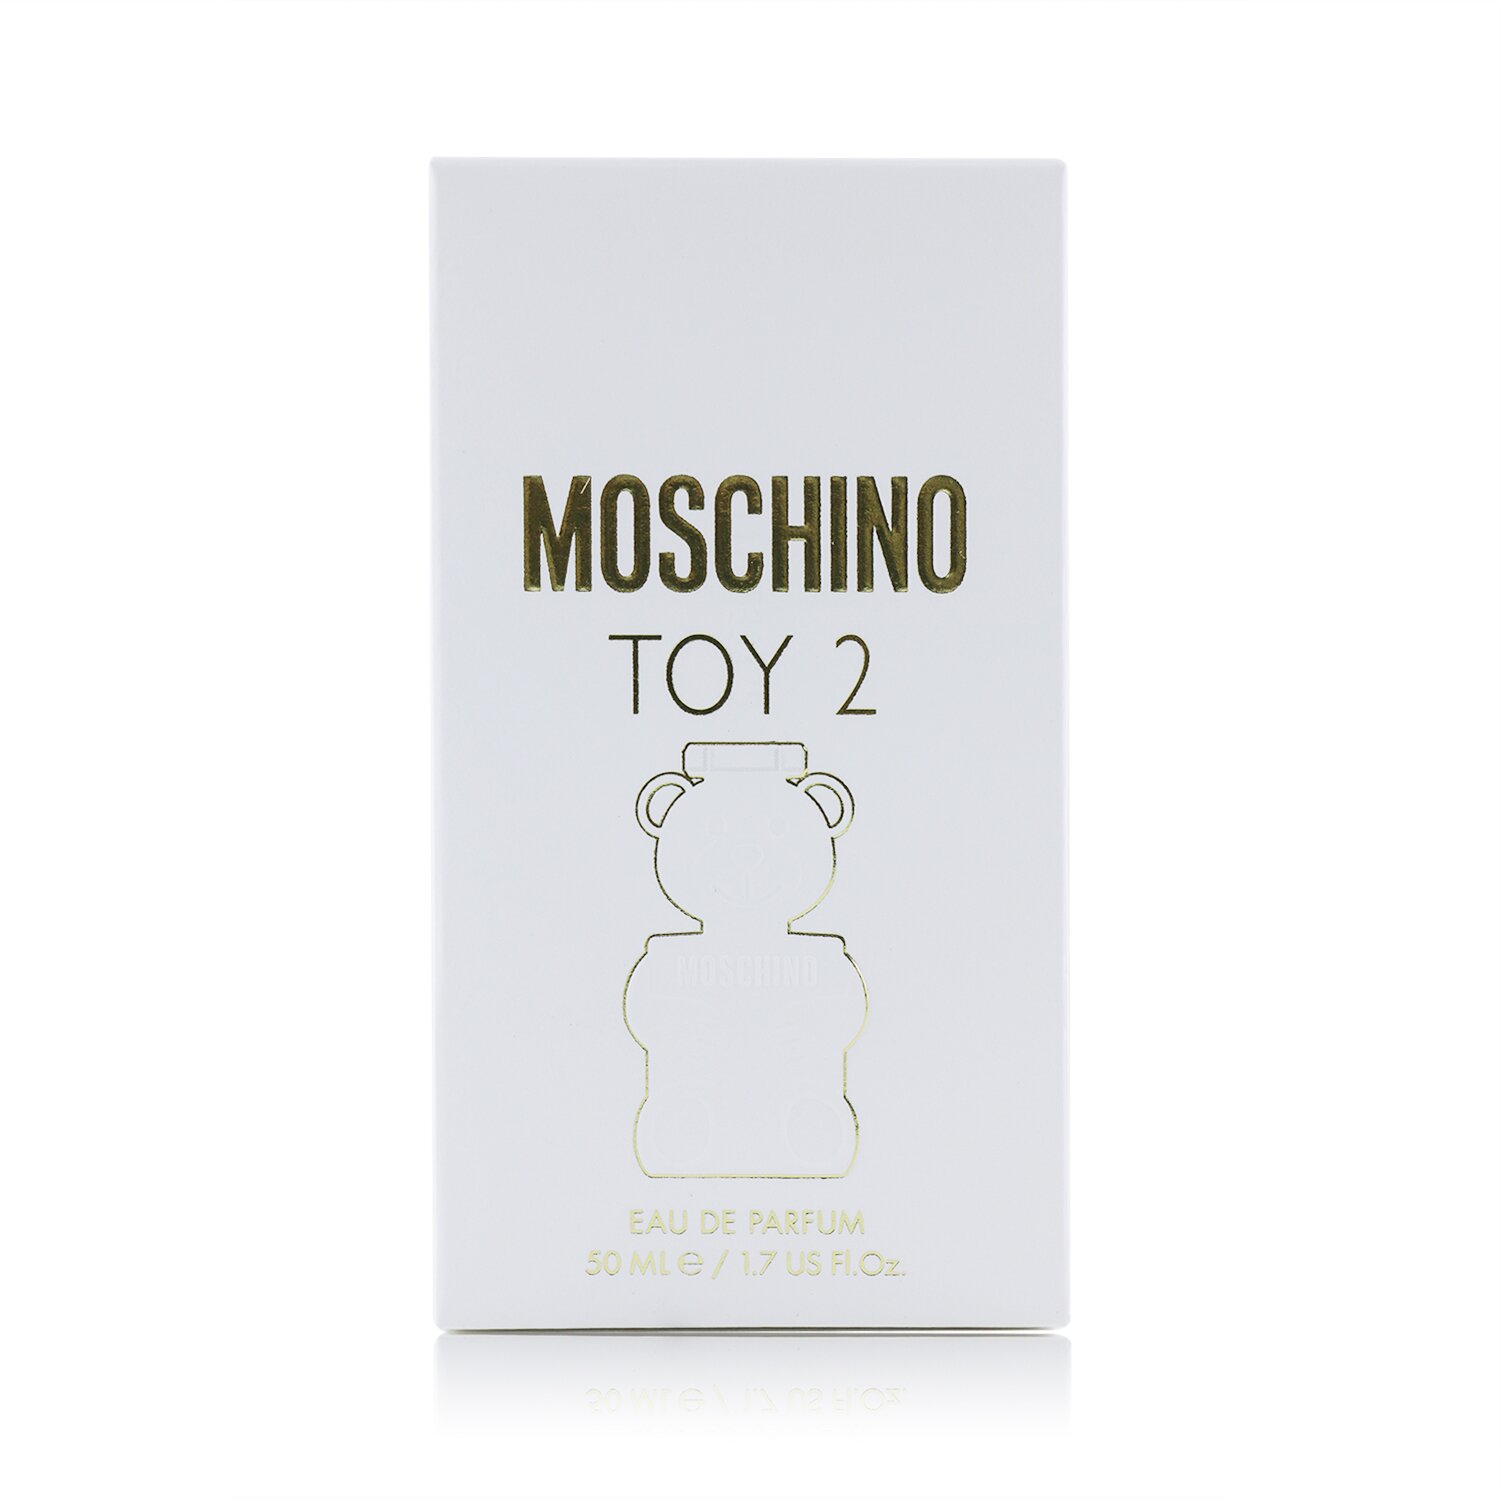 Moschino Toy 2 Eau De Parfum Spray 50ml/1.7oz